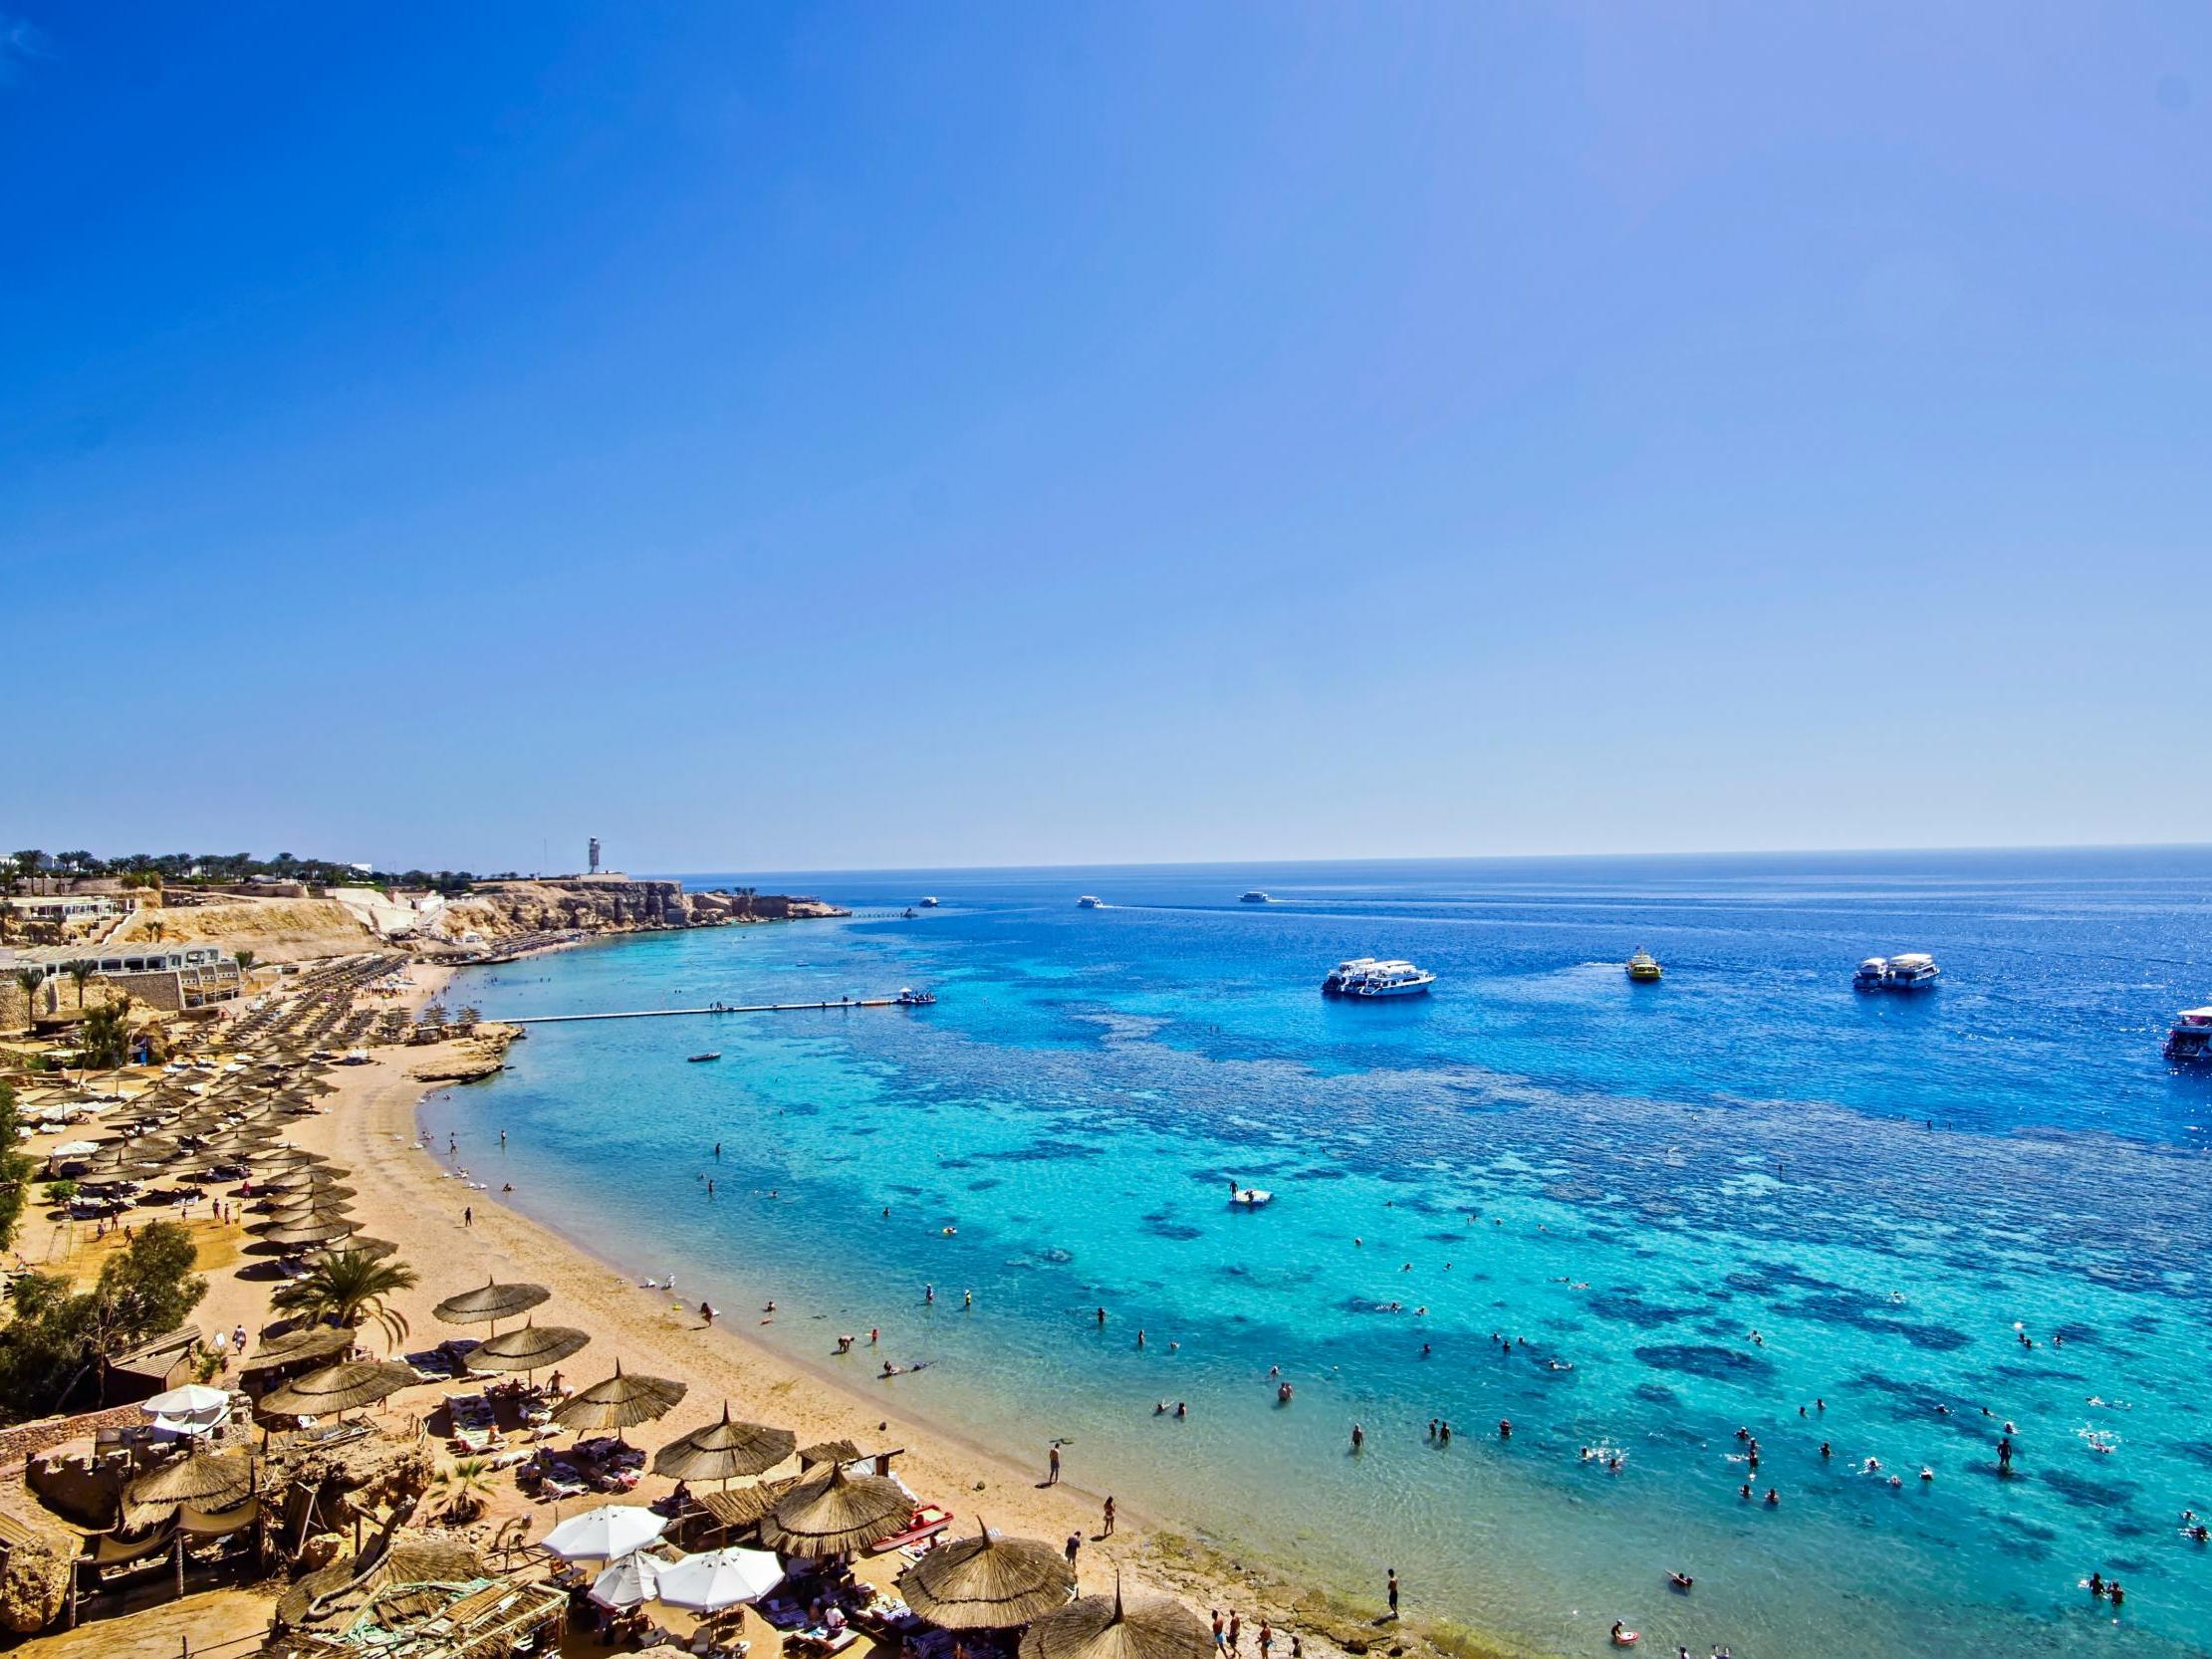 Blue heaven: Sharm el Sheikh